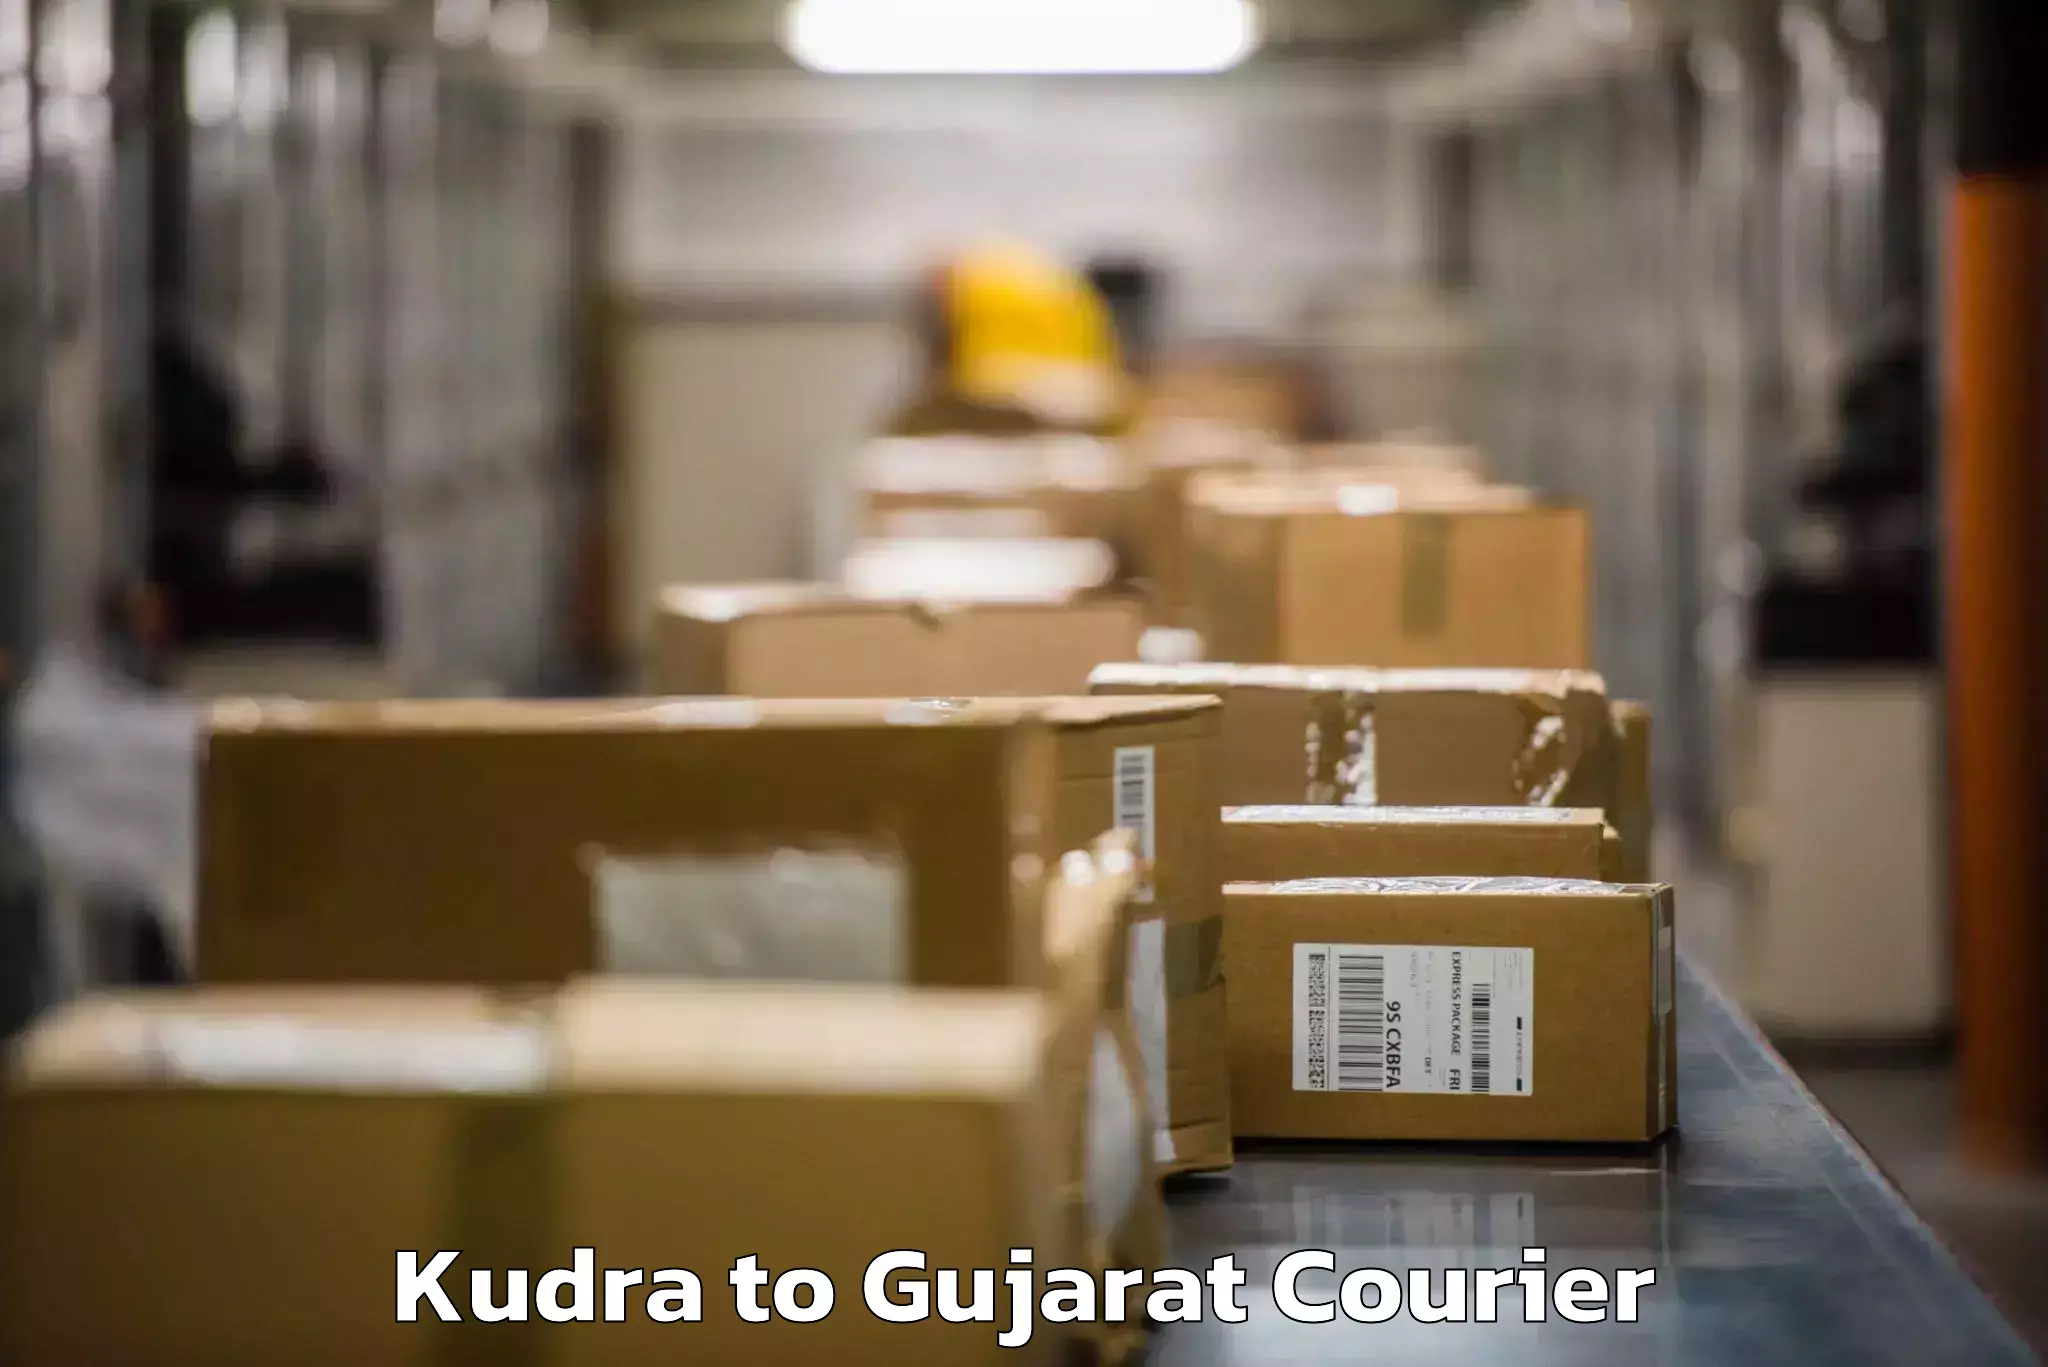 Door-to-door baggage service Kudra to Gujarat